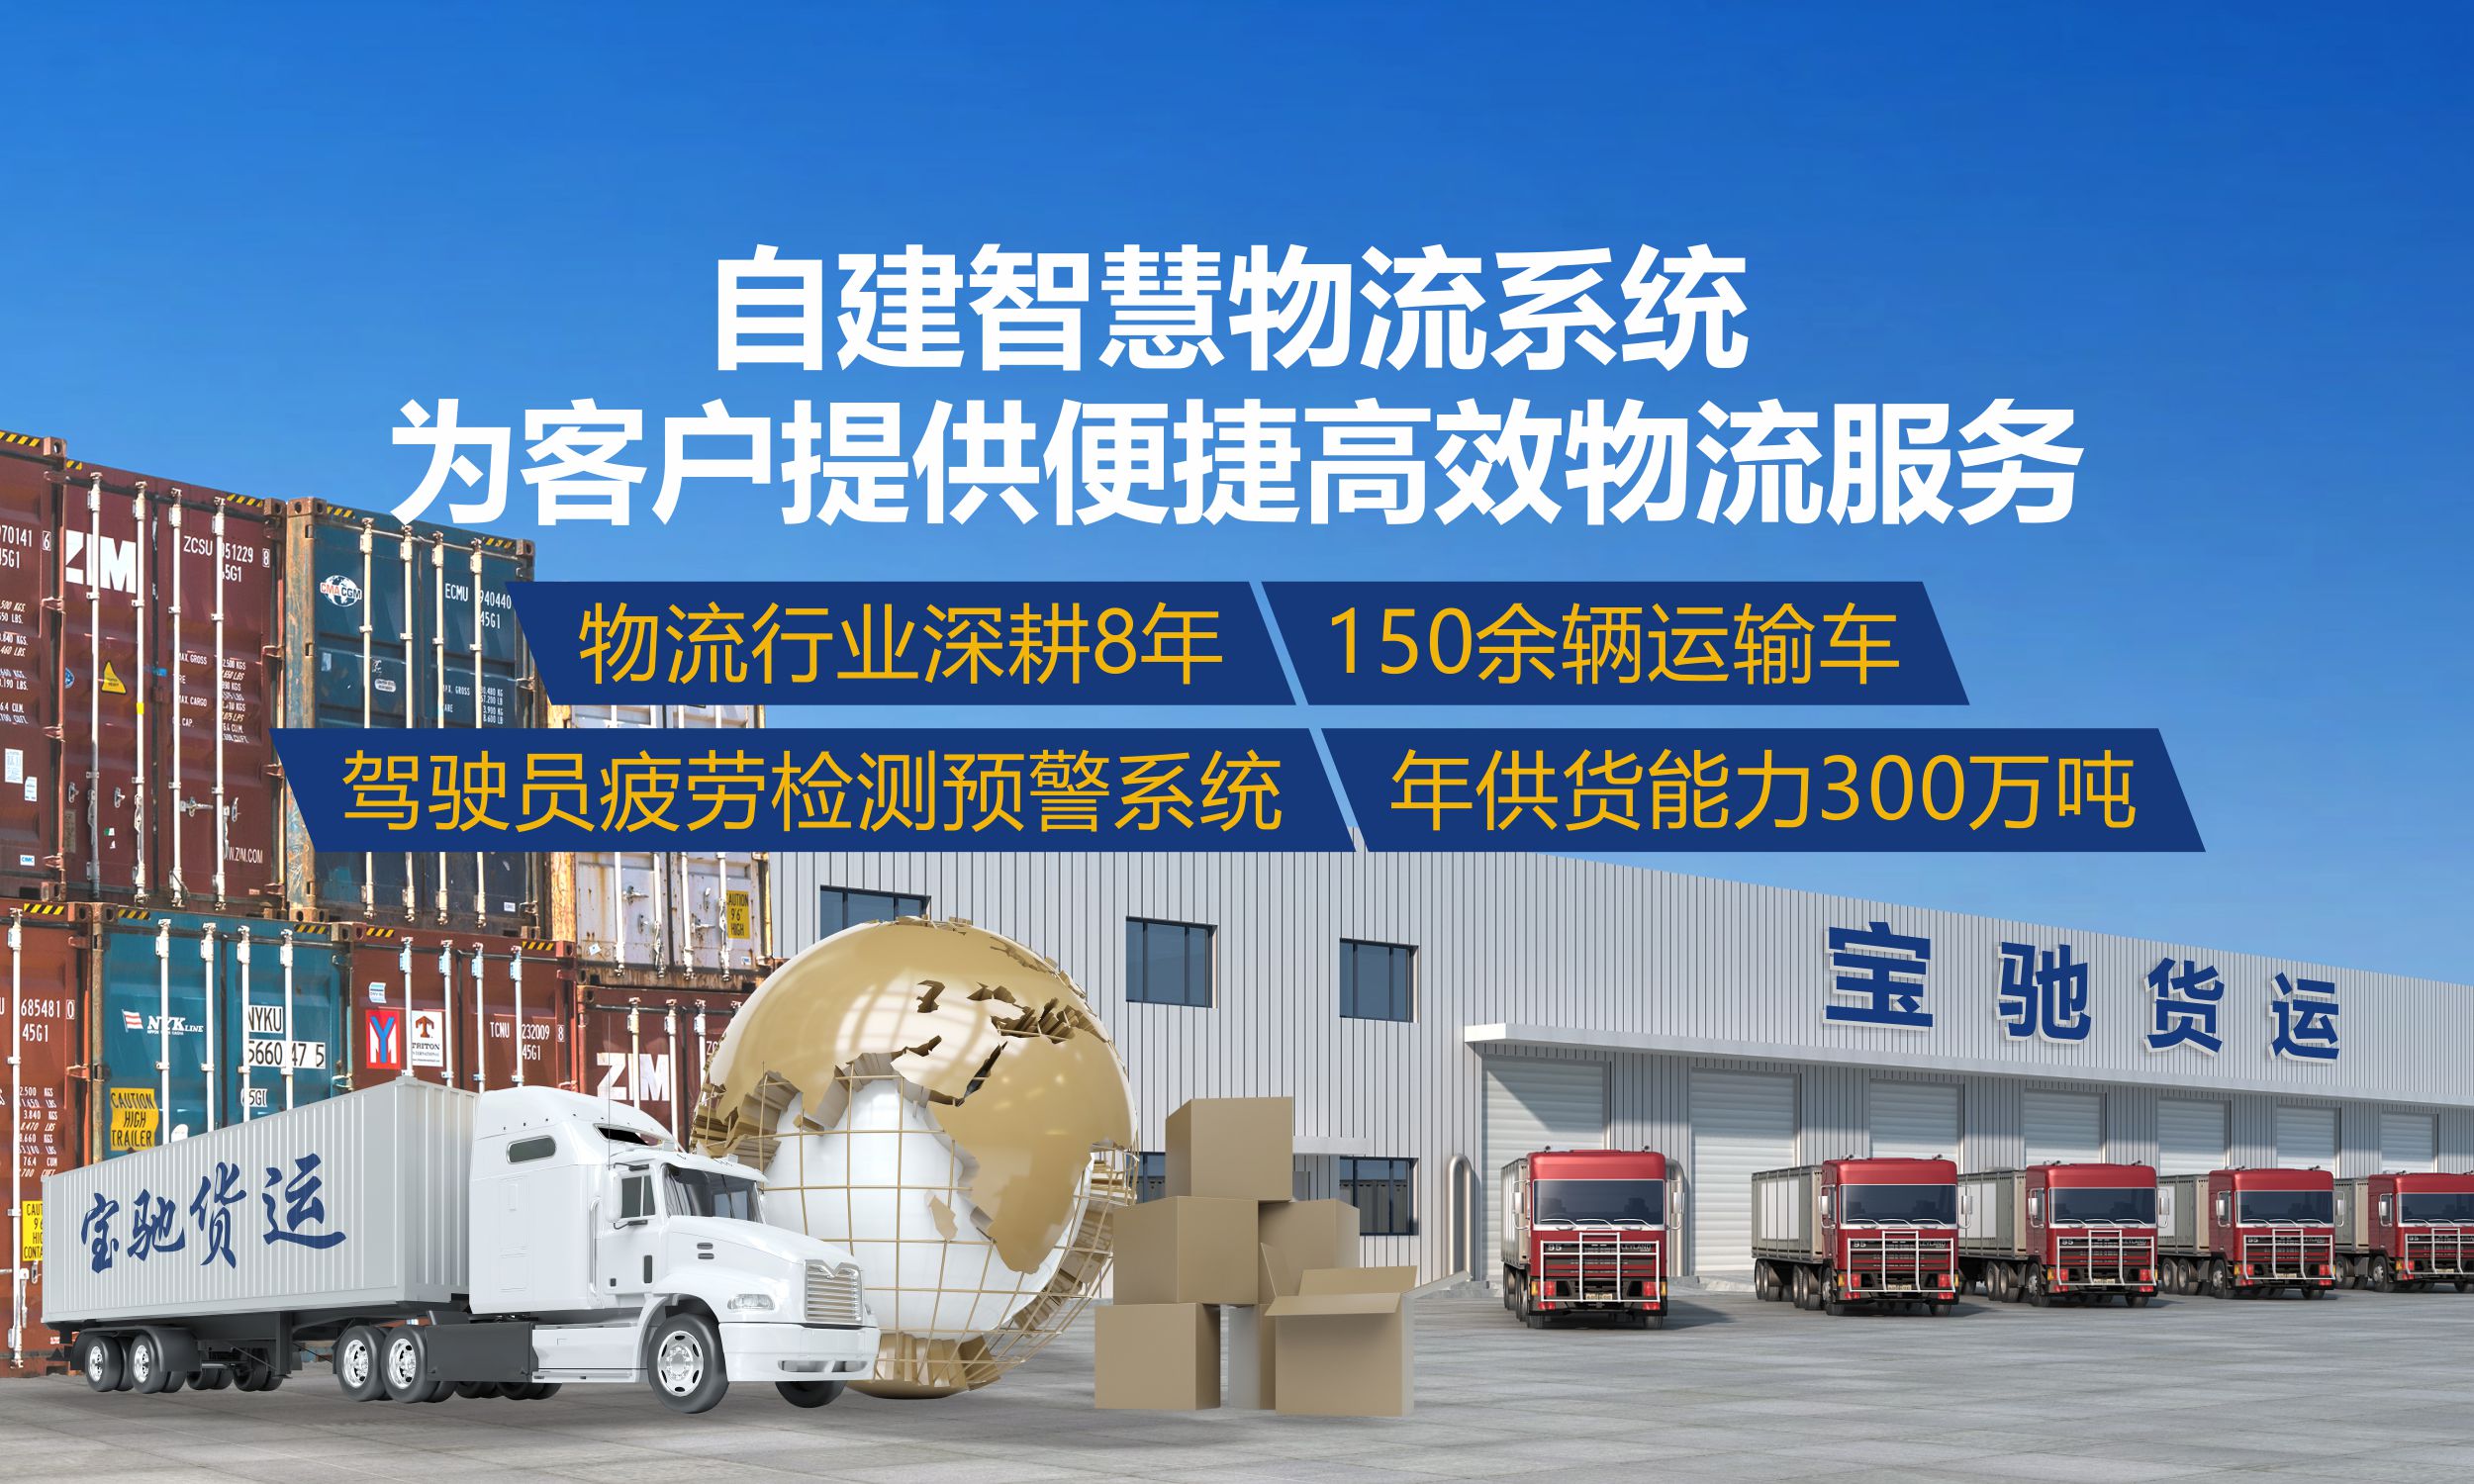 昆明新腾-7年货运经验，150余辆车，年供货能力300万吨